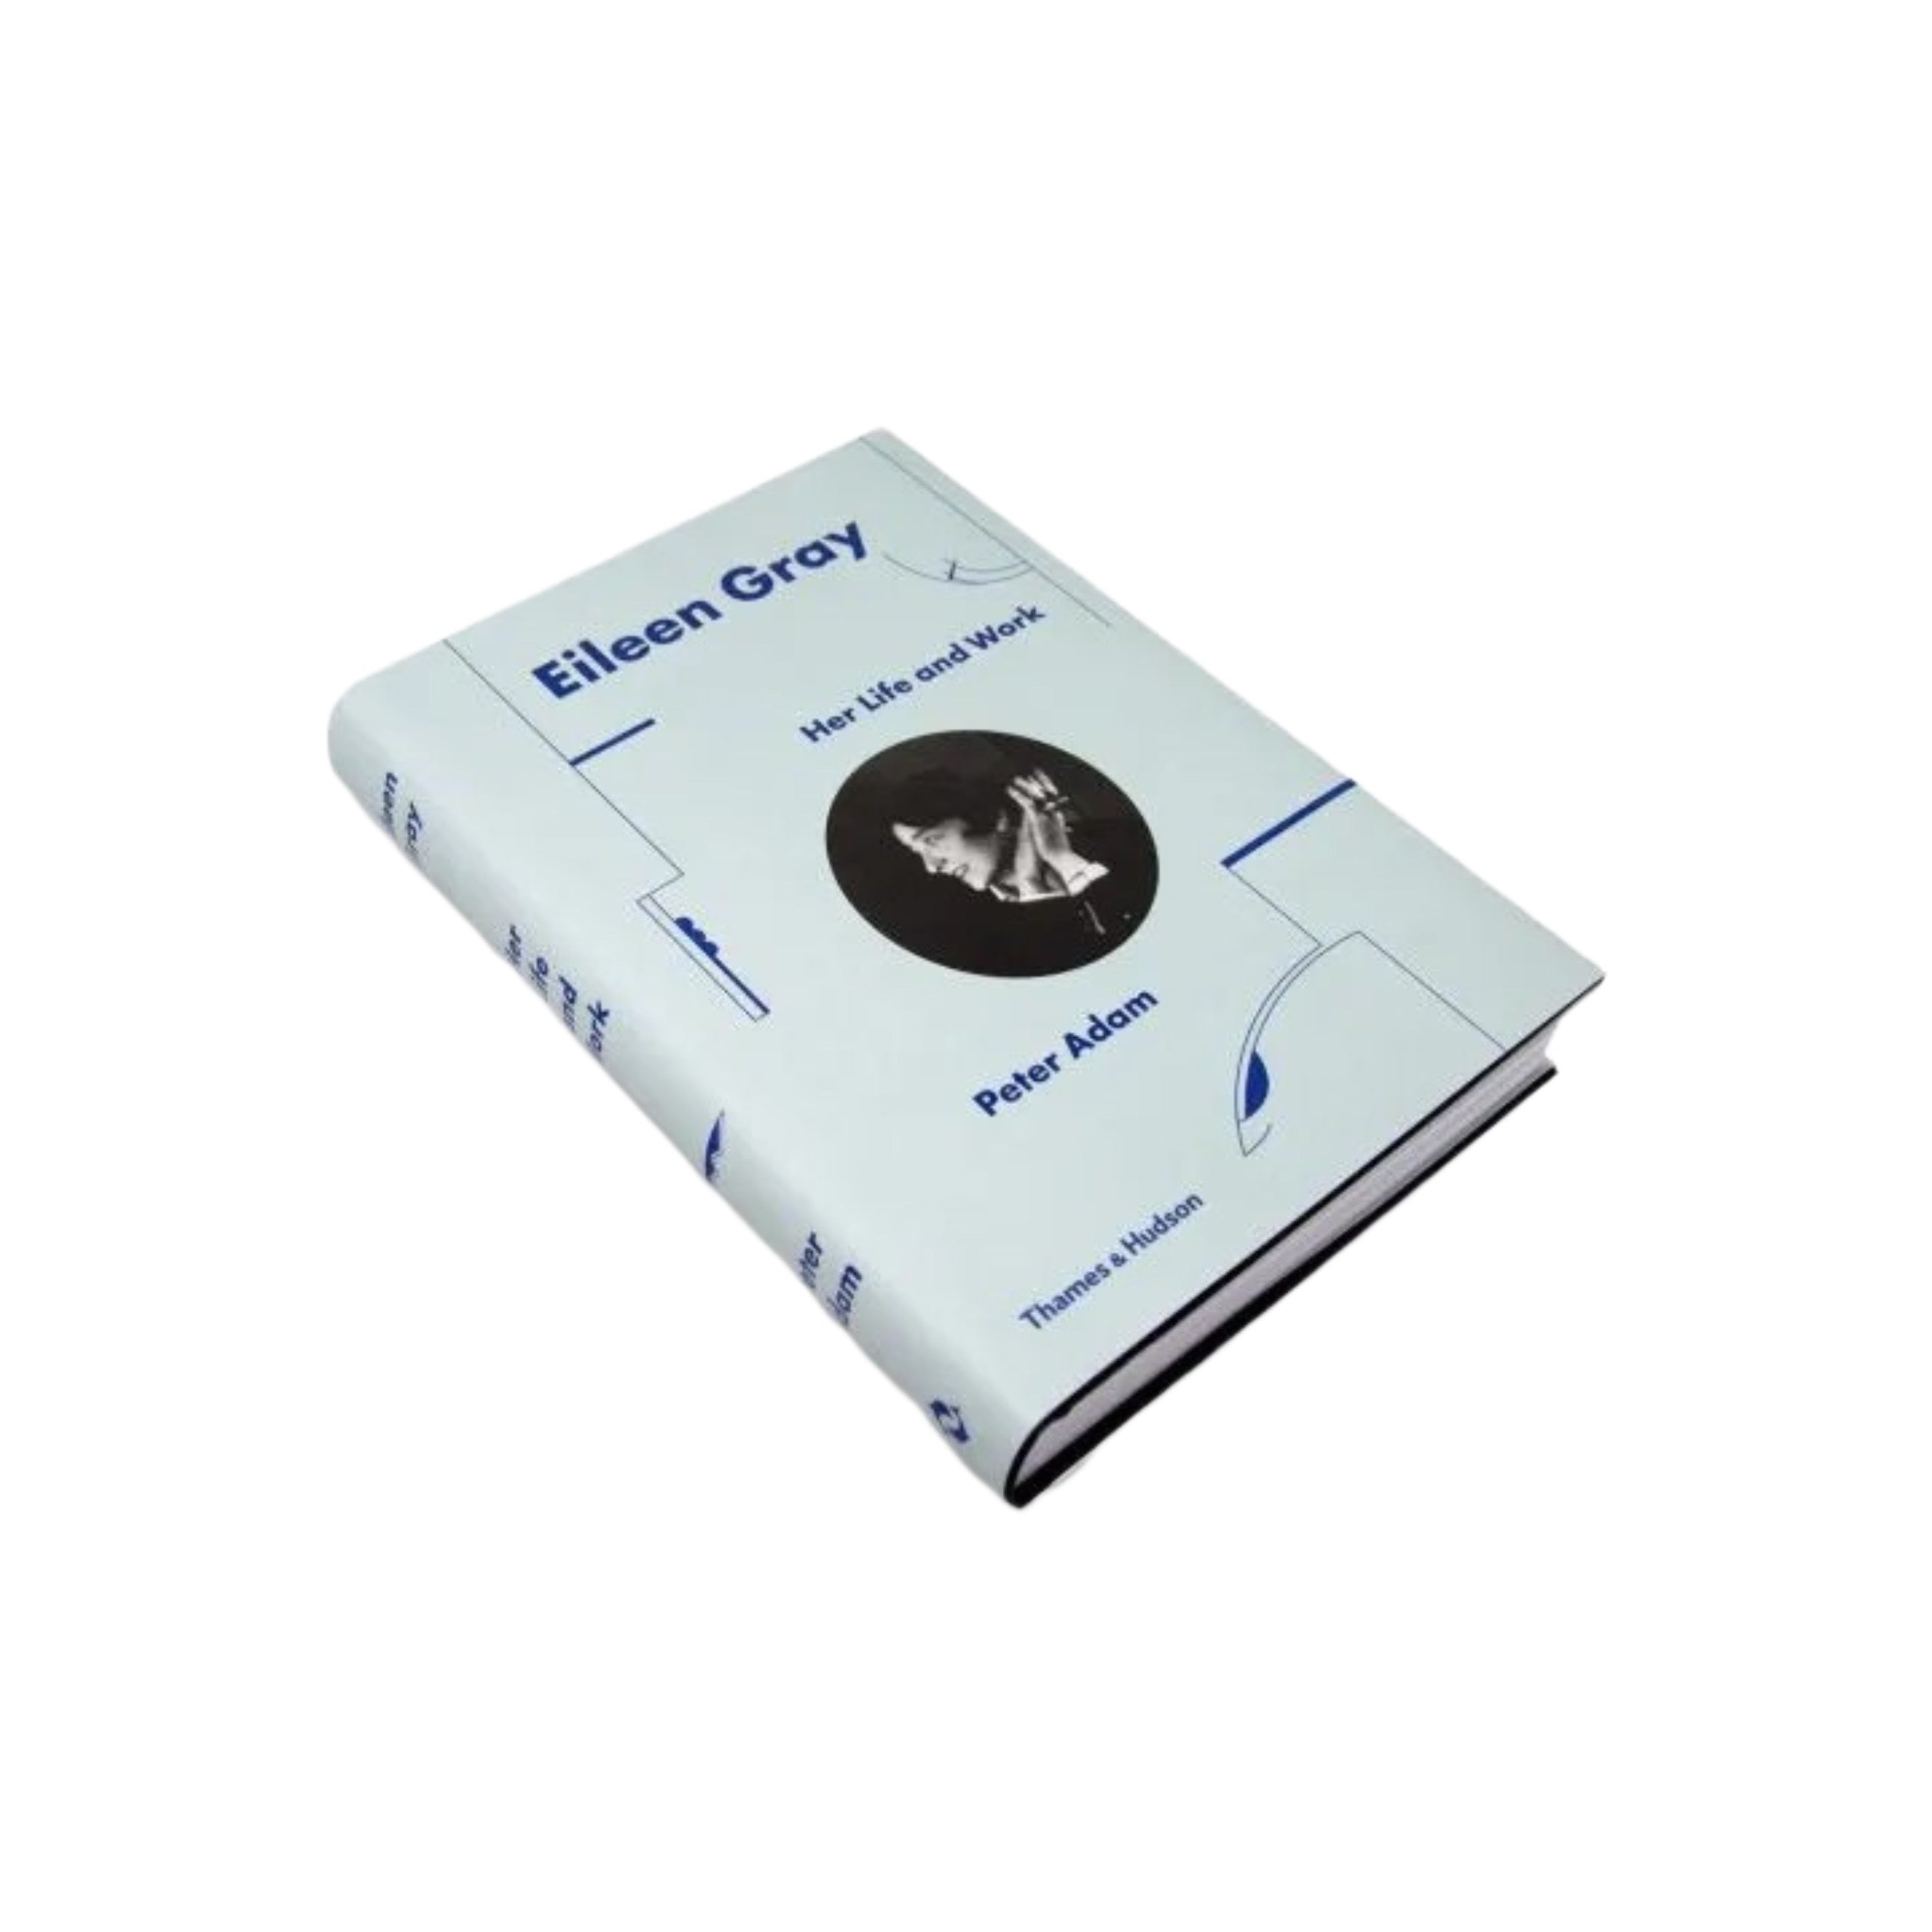 Pale Blue - 3 Book Bundle